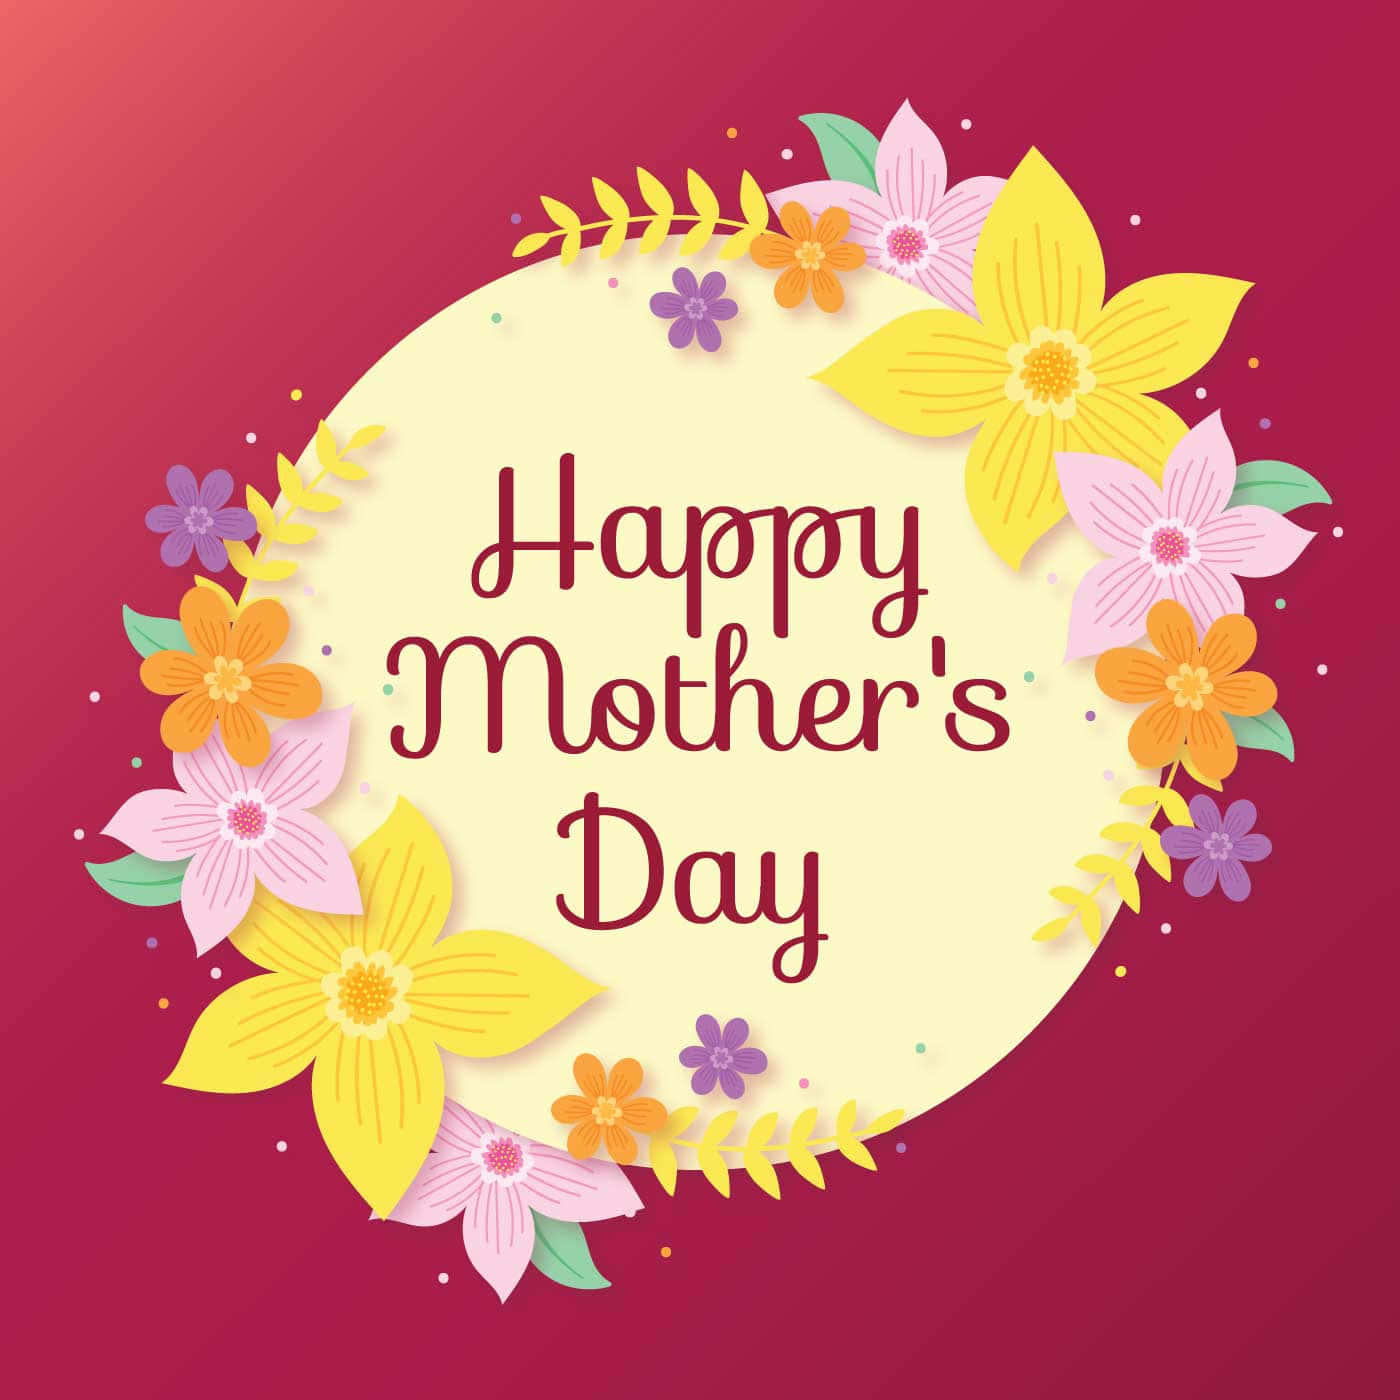 Feiernsie Ihre Mutter An Diesem Muttertag!